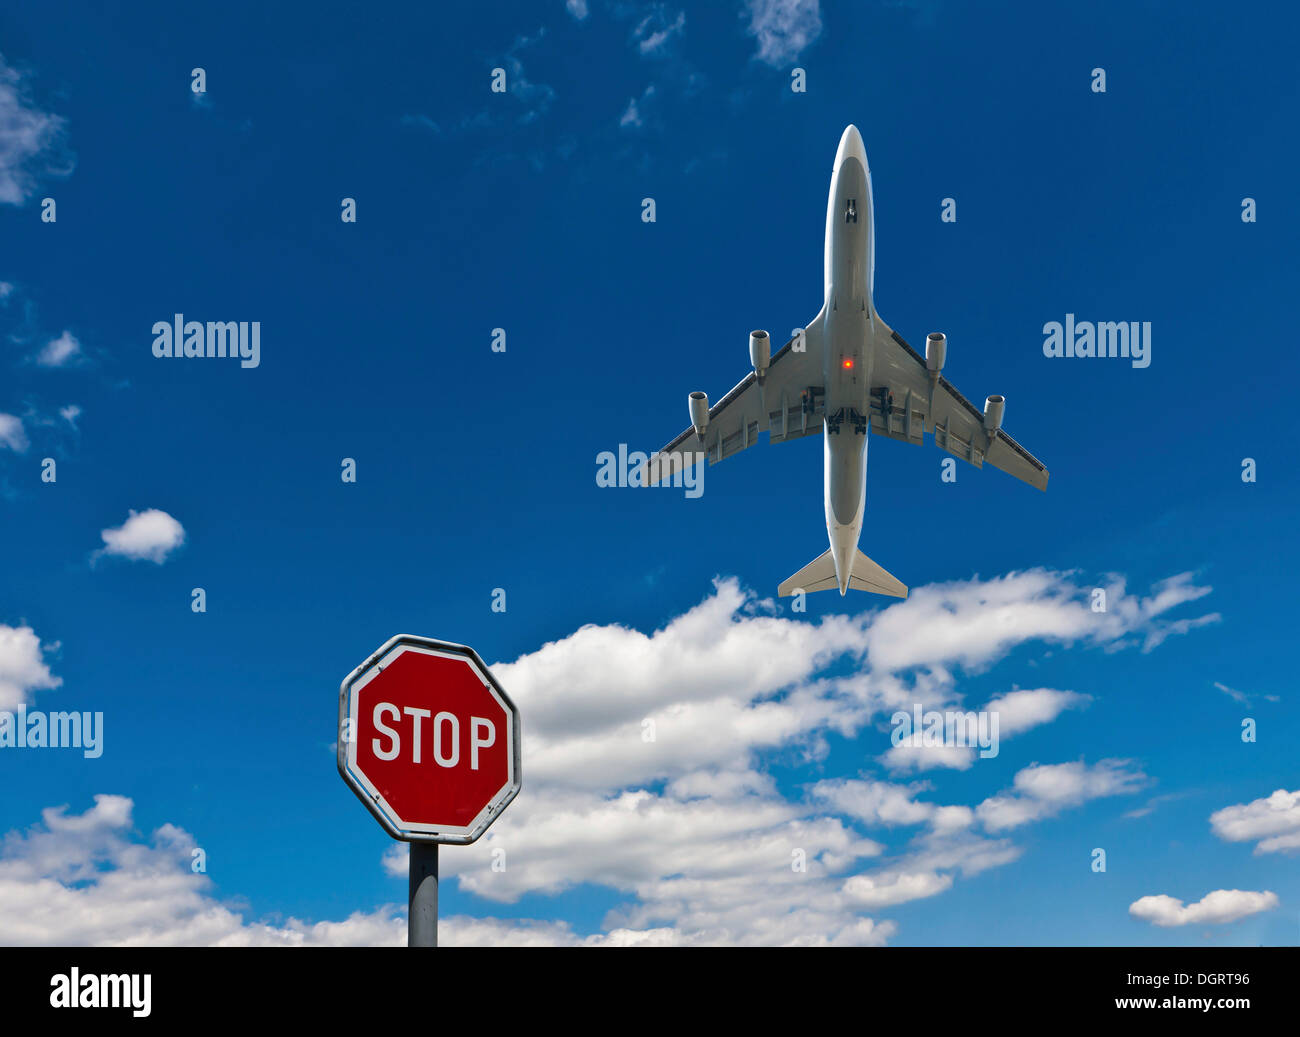 Panneau d'arrêt contre un ciel bleu avec des nuages et de l'aéronef, image symbolique pour arrêter le bruit des avions Banque D'Images